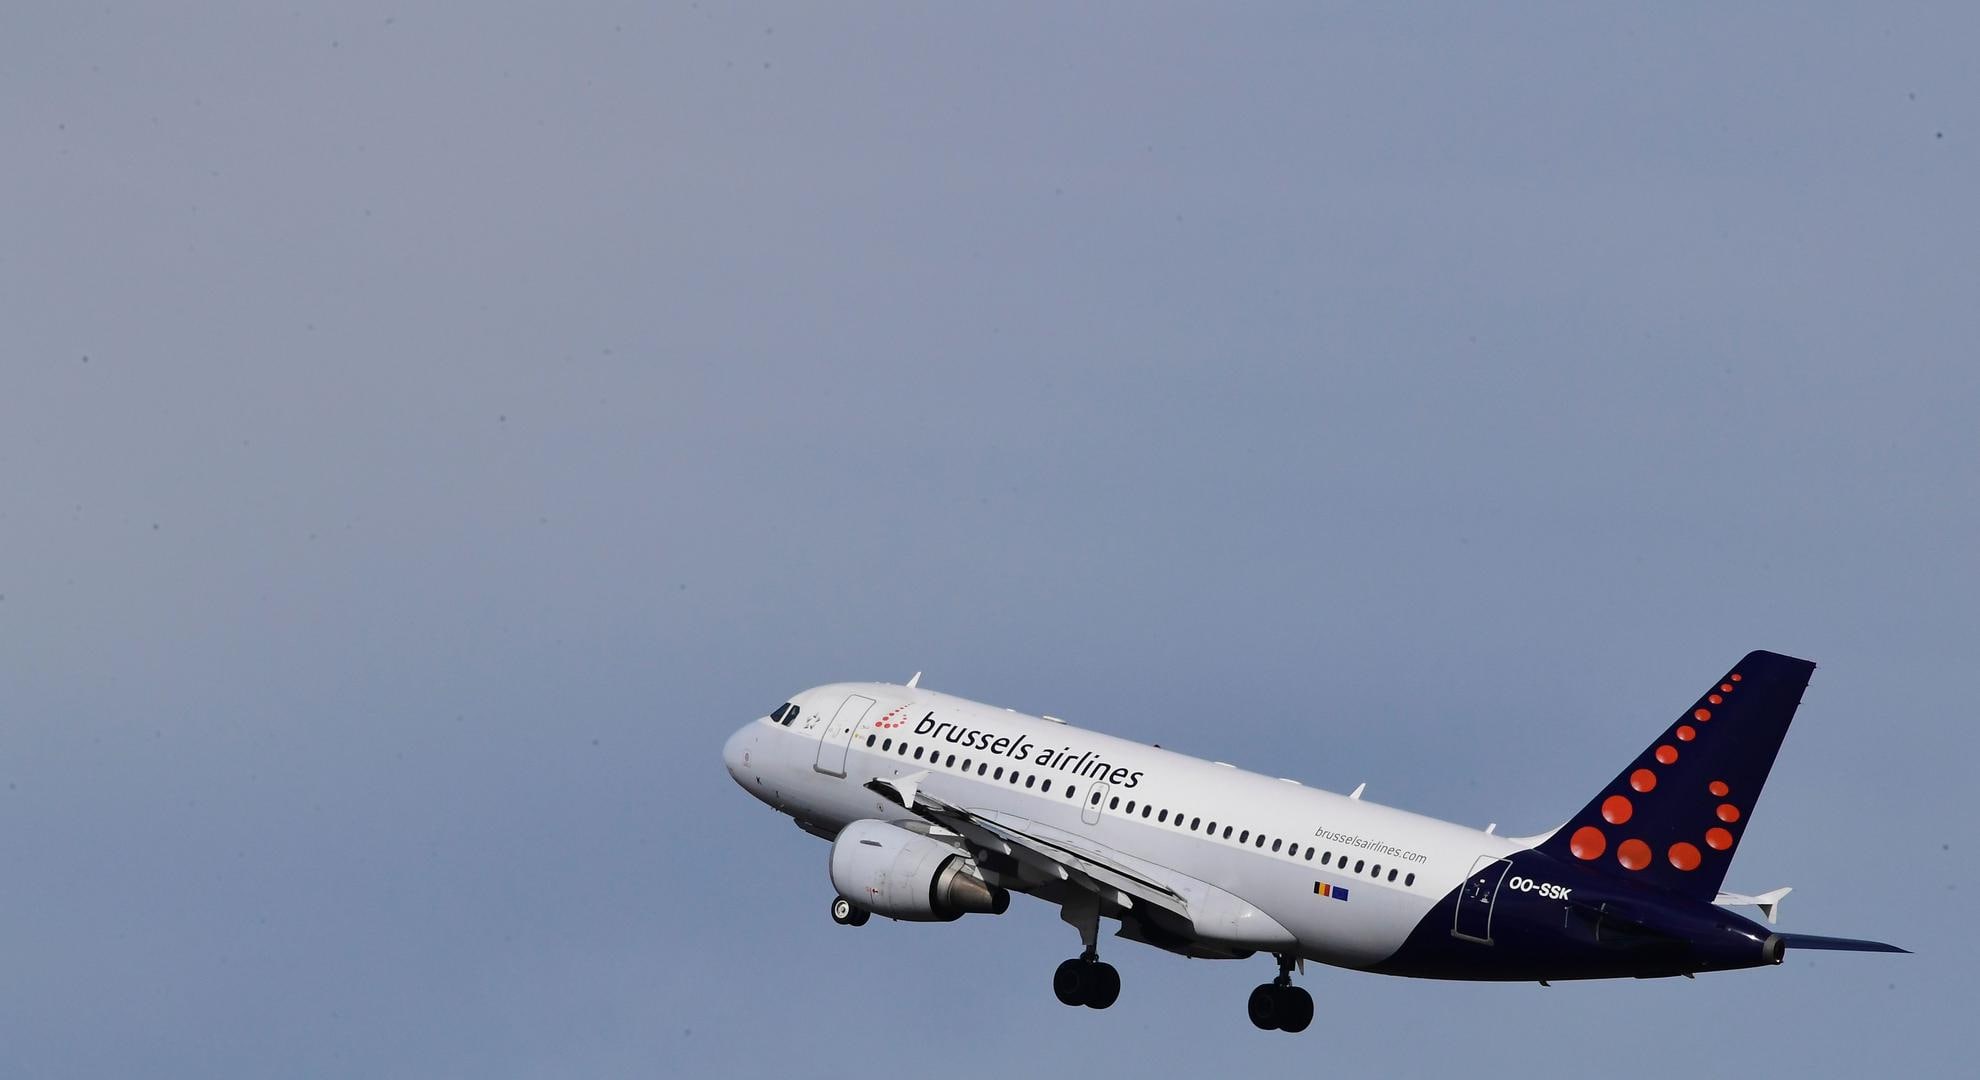 "Brussels Airlines organiseert sociale dumping binnen eigen bedrijf"